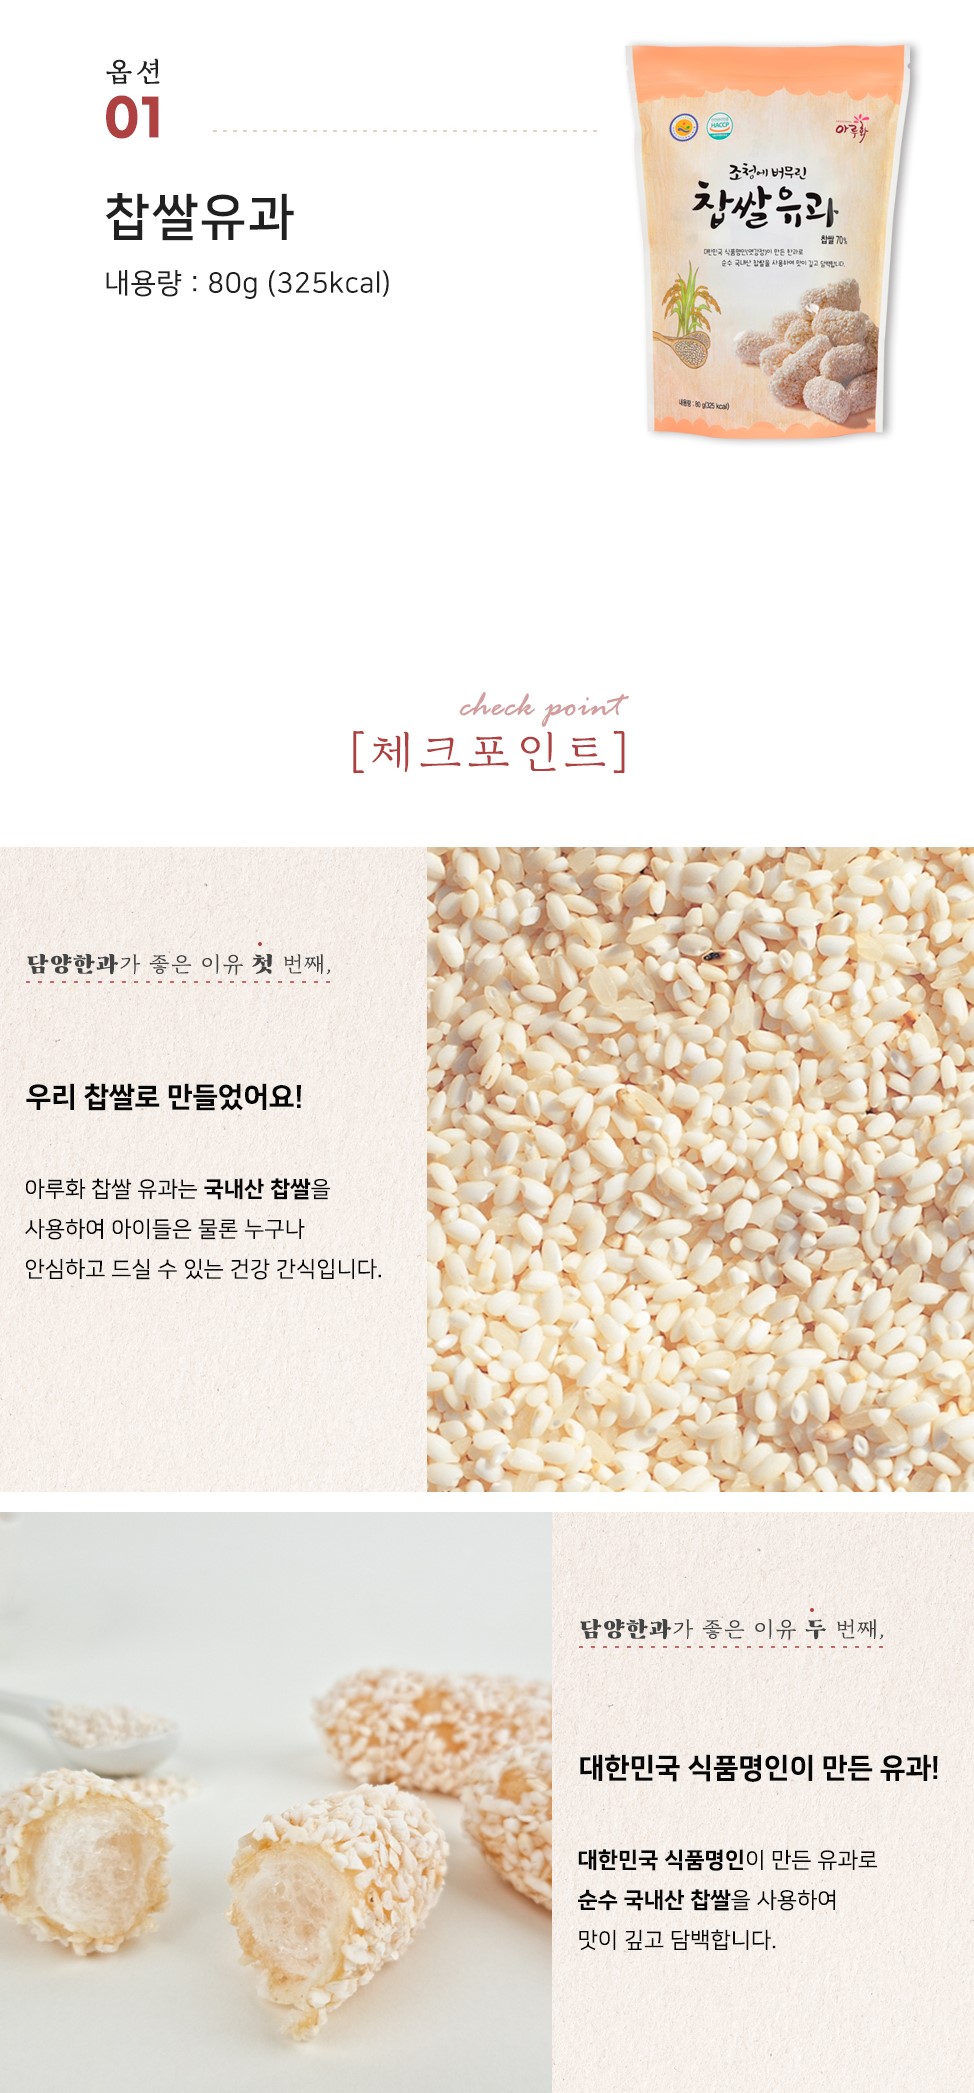 韓國食品-[Ahluhwa] Glutinous Rice Yugwa 80g